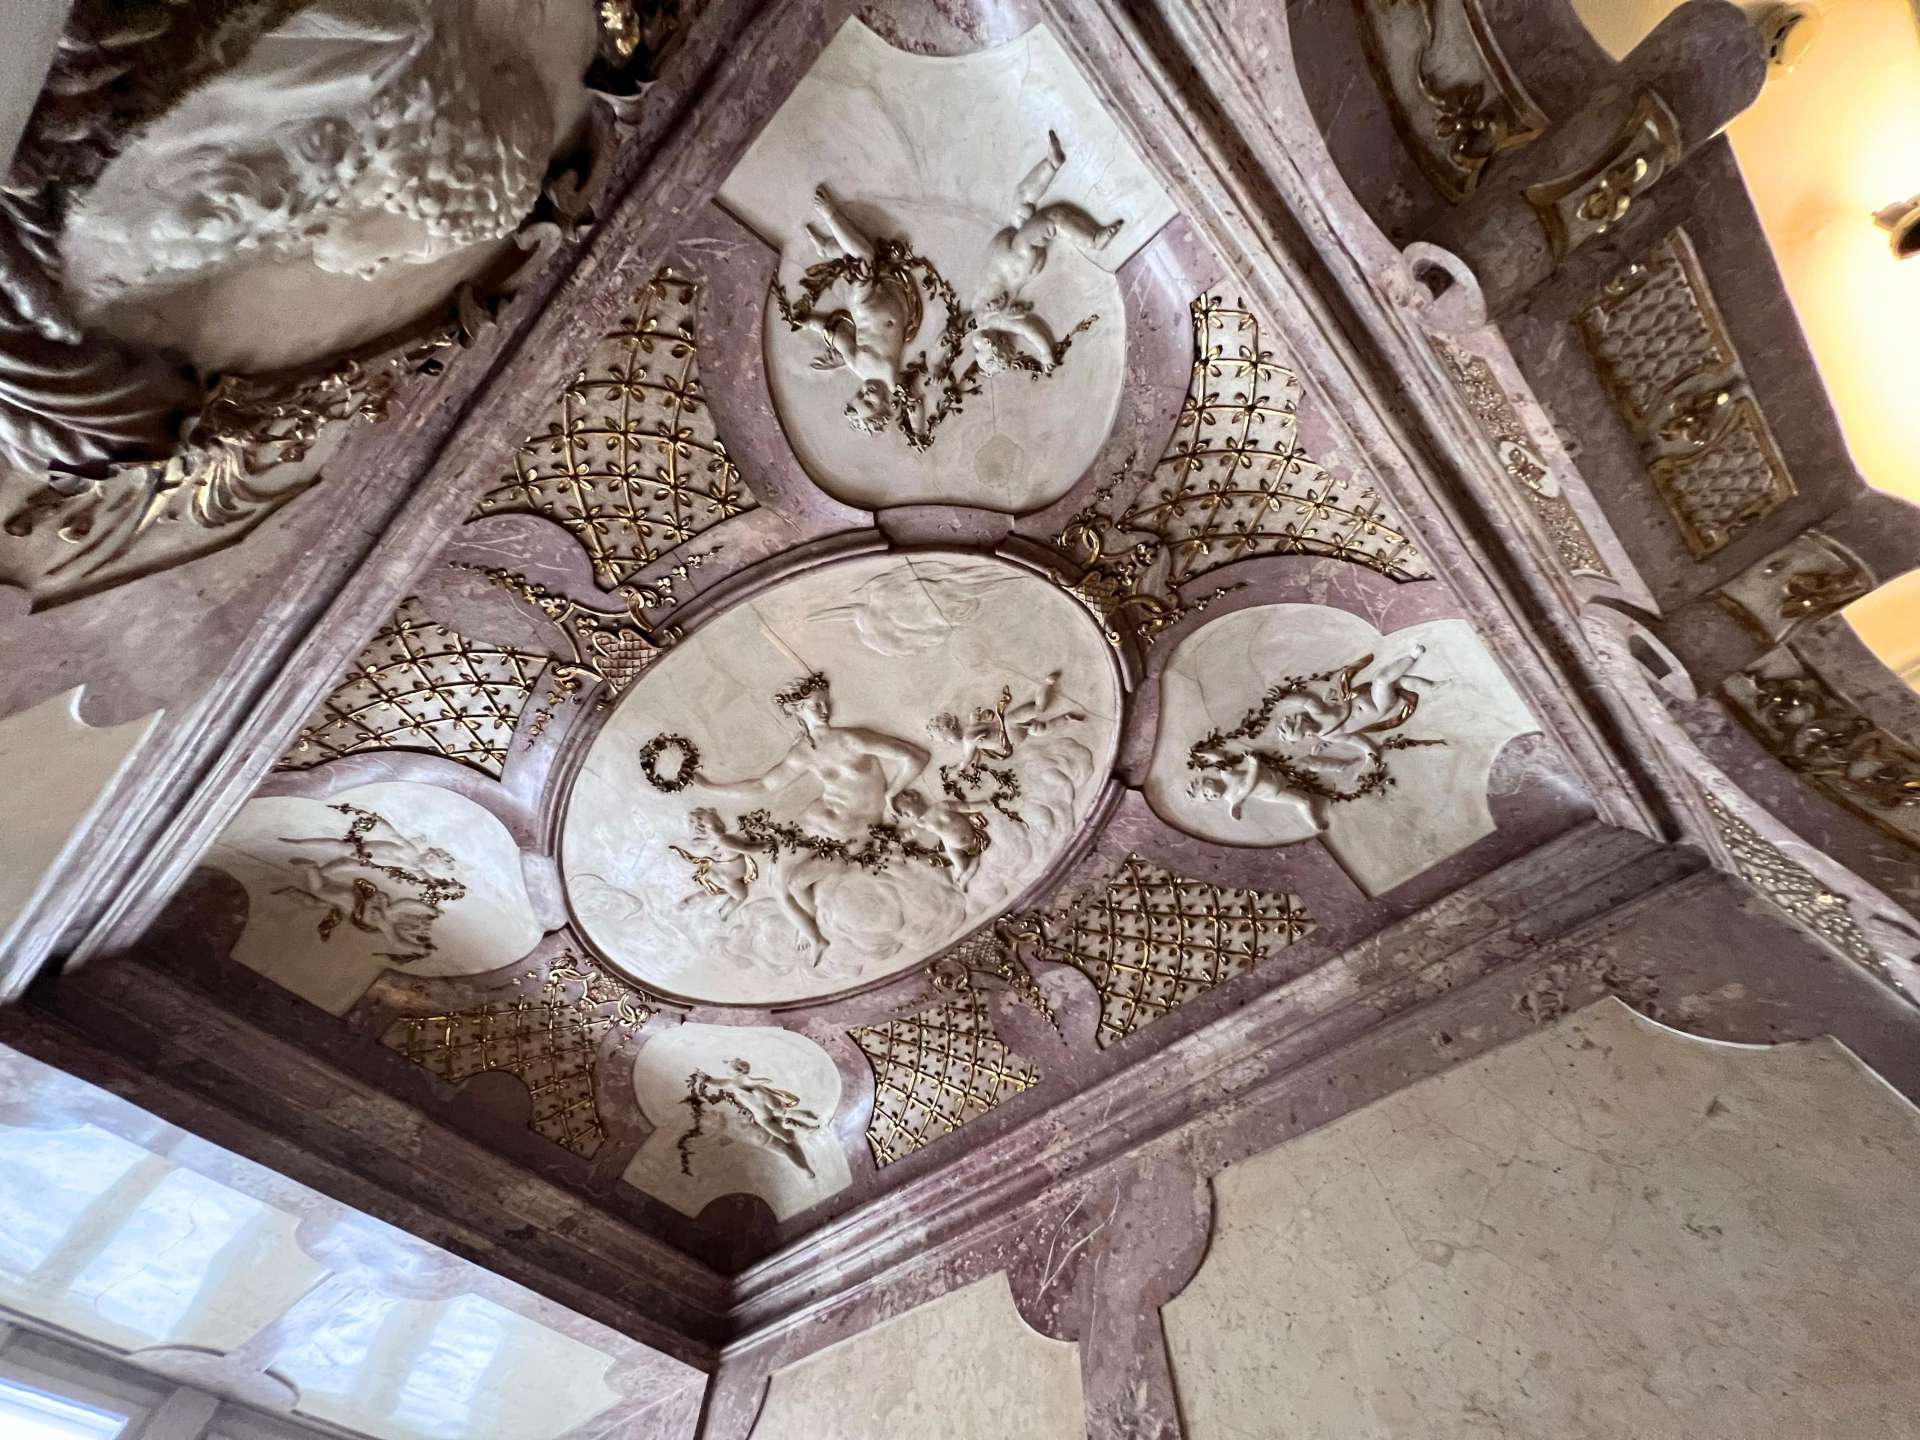 ©オーストリア政府観光局/ TYO
イタリア人芸術家アルベルト・カメジーナによる見事な天井彫刻